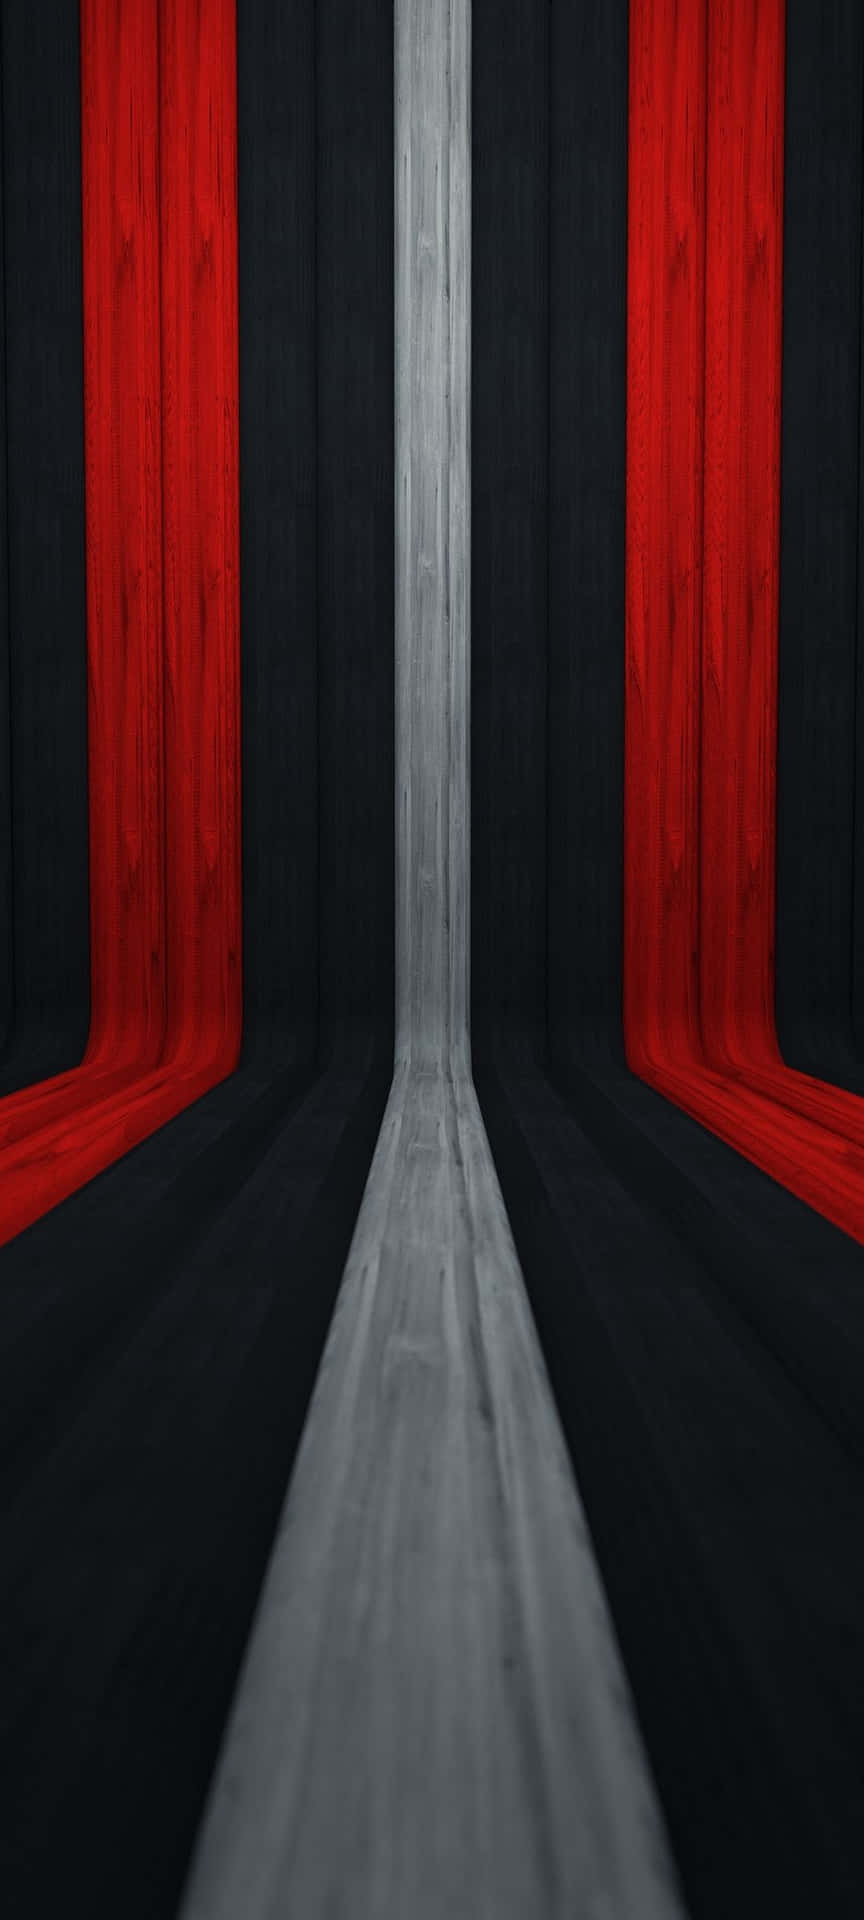 Einauffälliges Abstraktes Design In Rot, Weiß Und Schwarz. Wallpaper